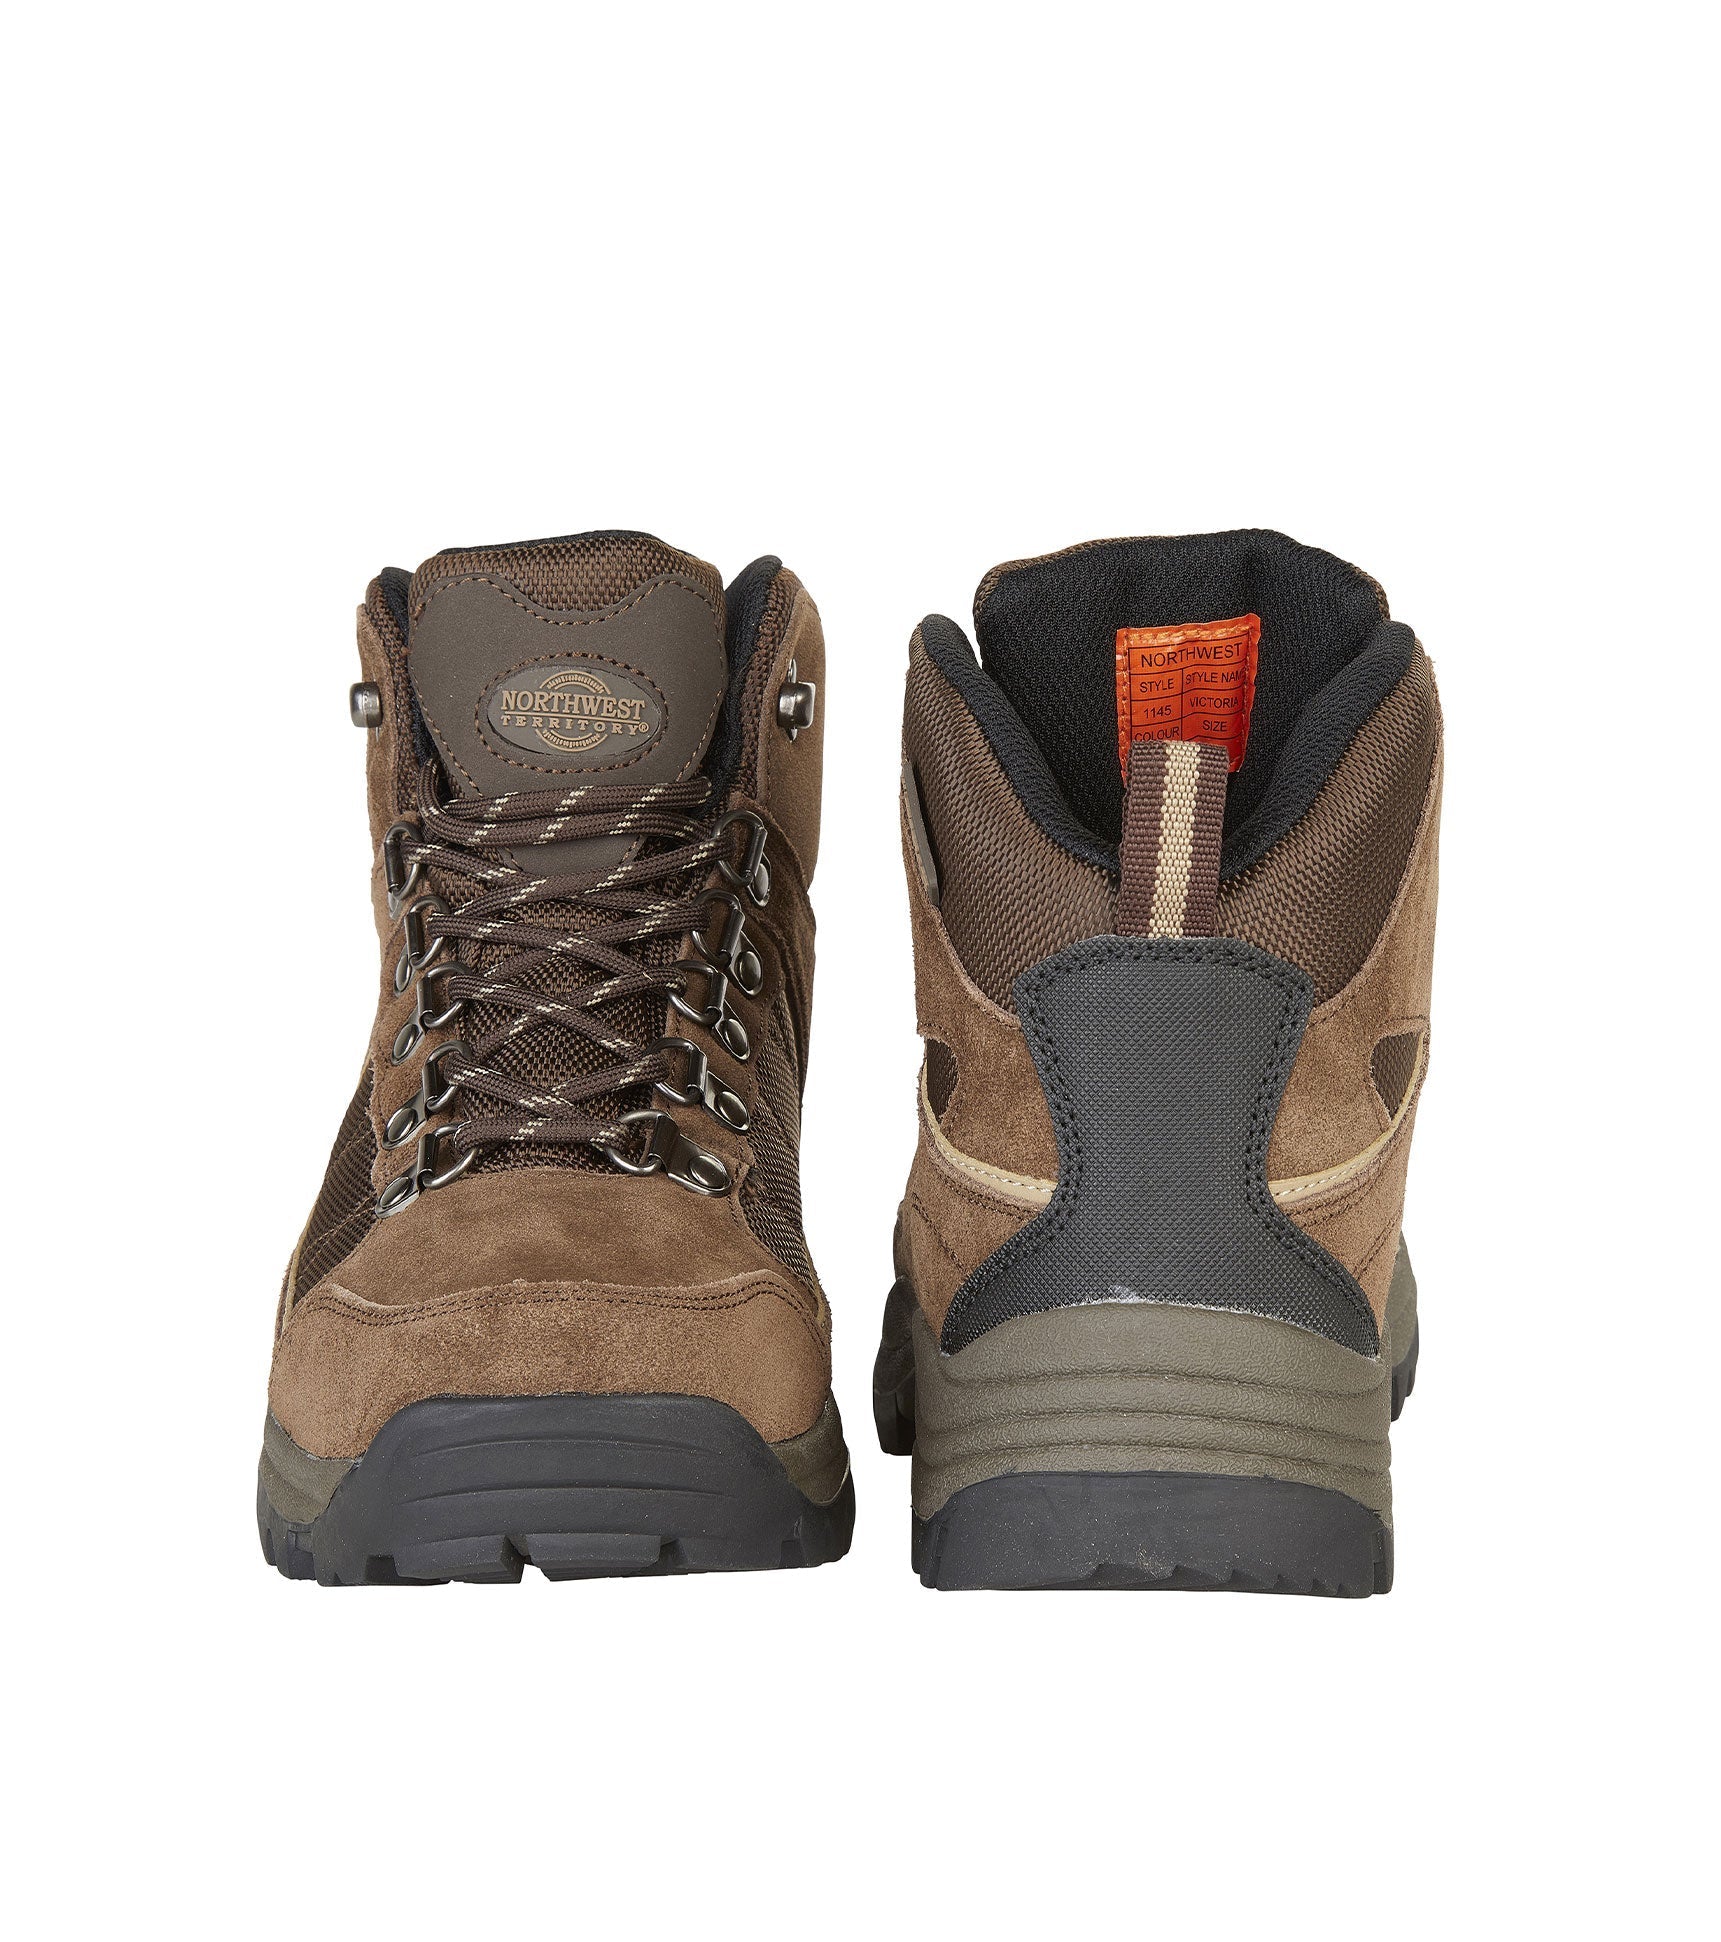 Women's Suede Leather Waterproof Walking Boots - Women's Suede Leather Waterproof Walking Boots